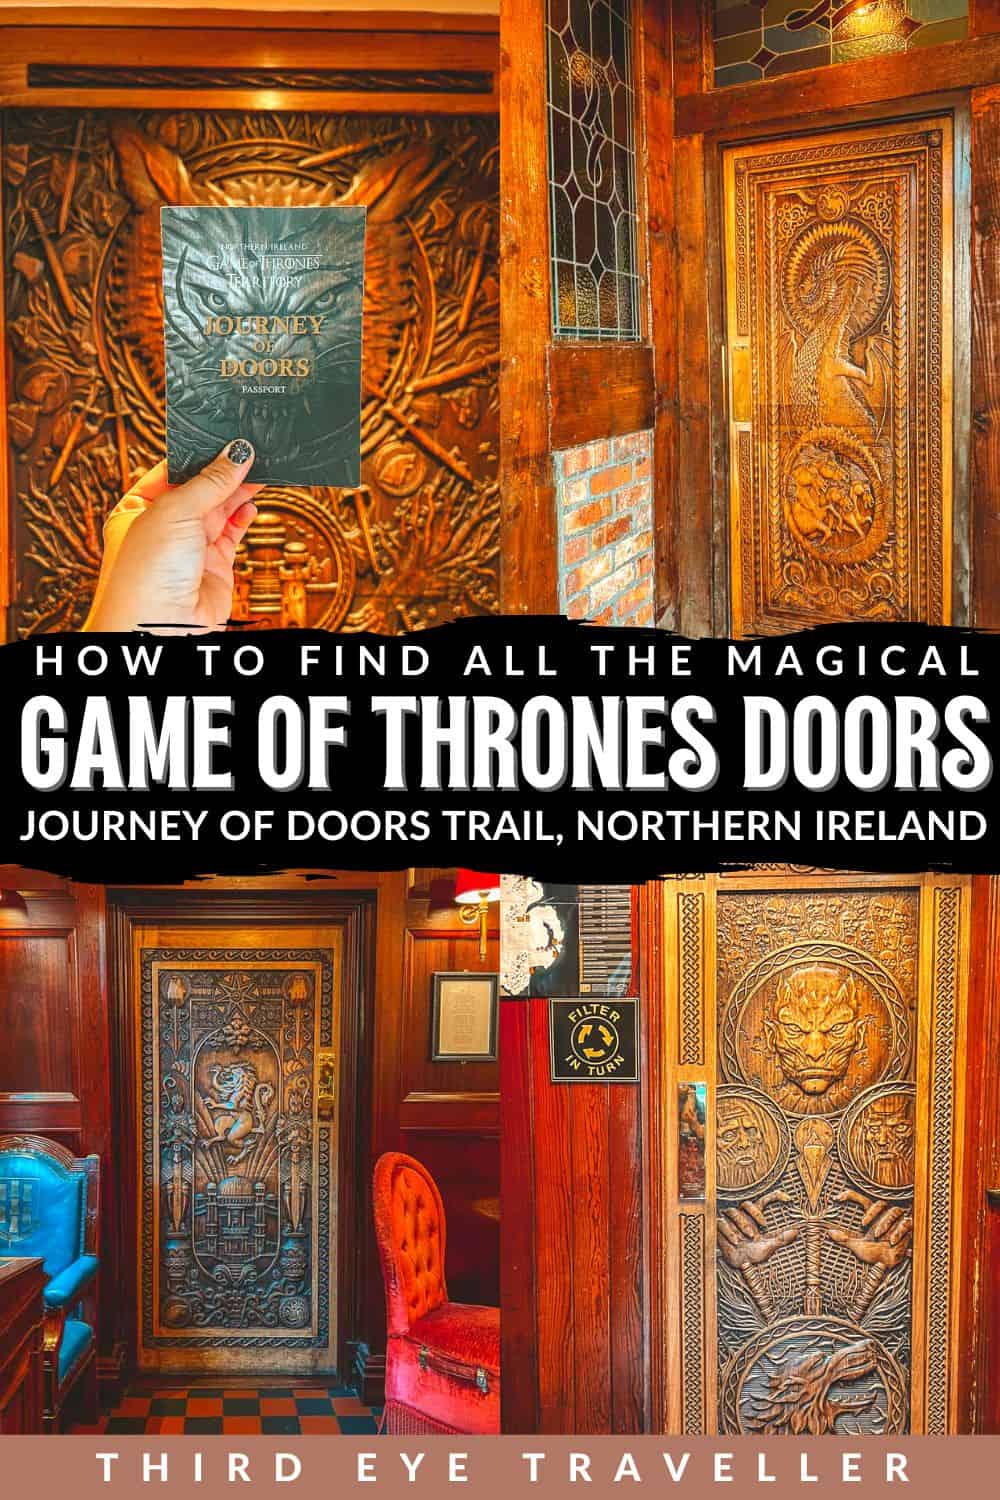 How to visit 10 Game of Thrones Doors Northern Ireland